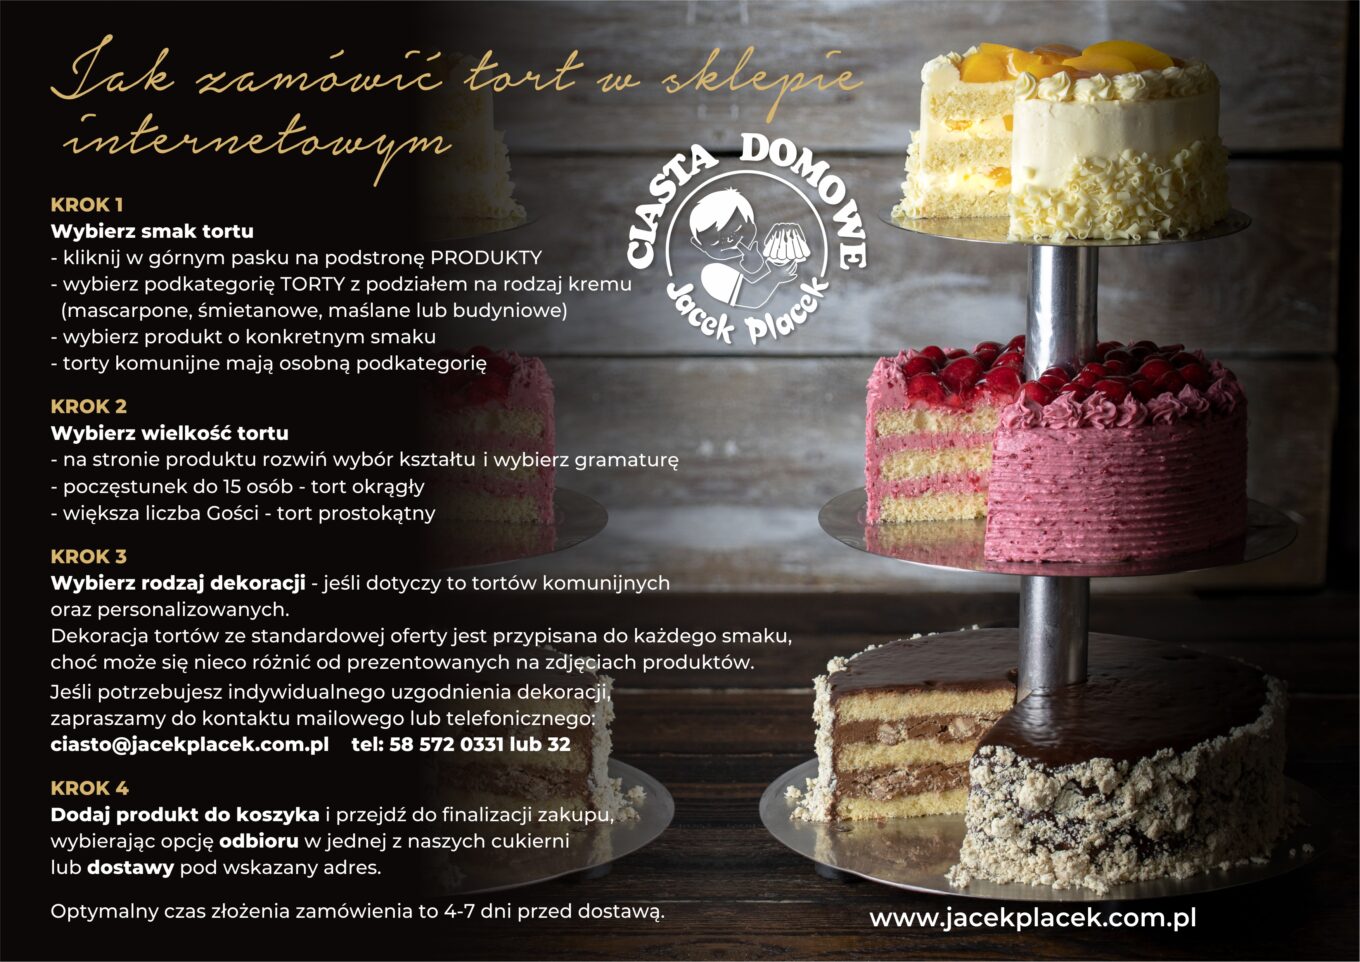 So bestellen Sie Kuchen: Die Konditorei Jacek Placek steht für den Geschmack hausgemachter Kuchen aus Naturprodukten.